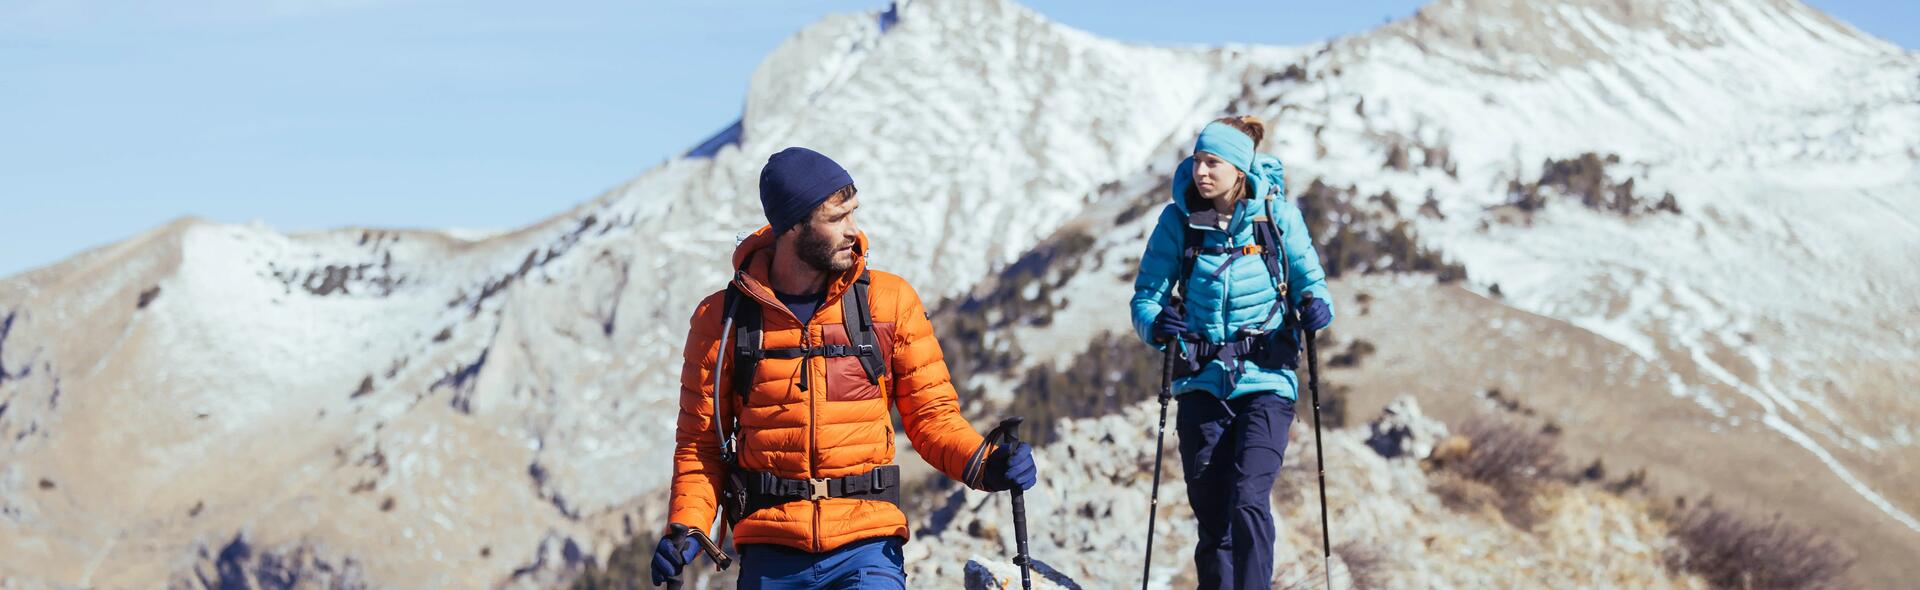 kobieta i mężczyzna wędrujący po górach z kijami trekkingowymi i plecakami turystycznymi na plecach